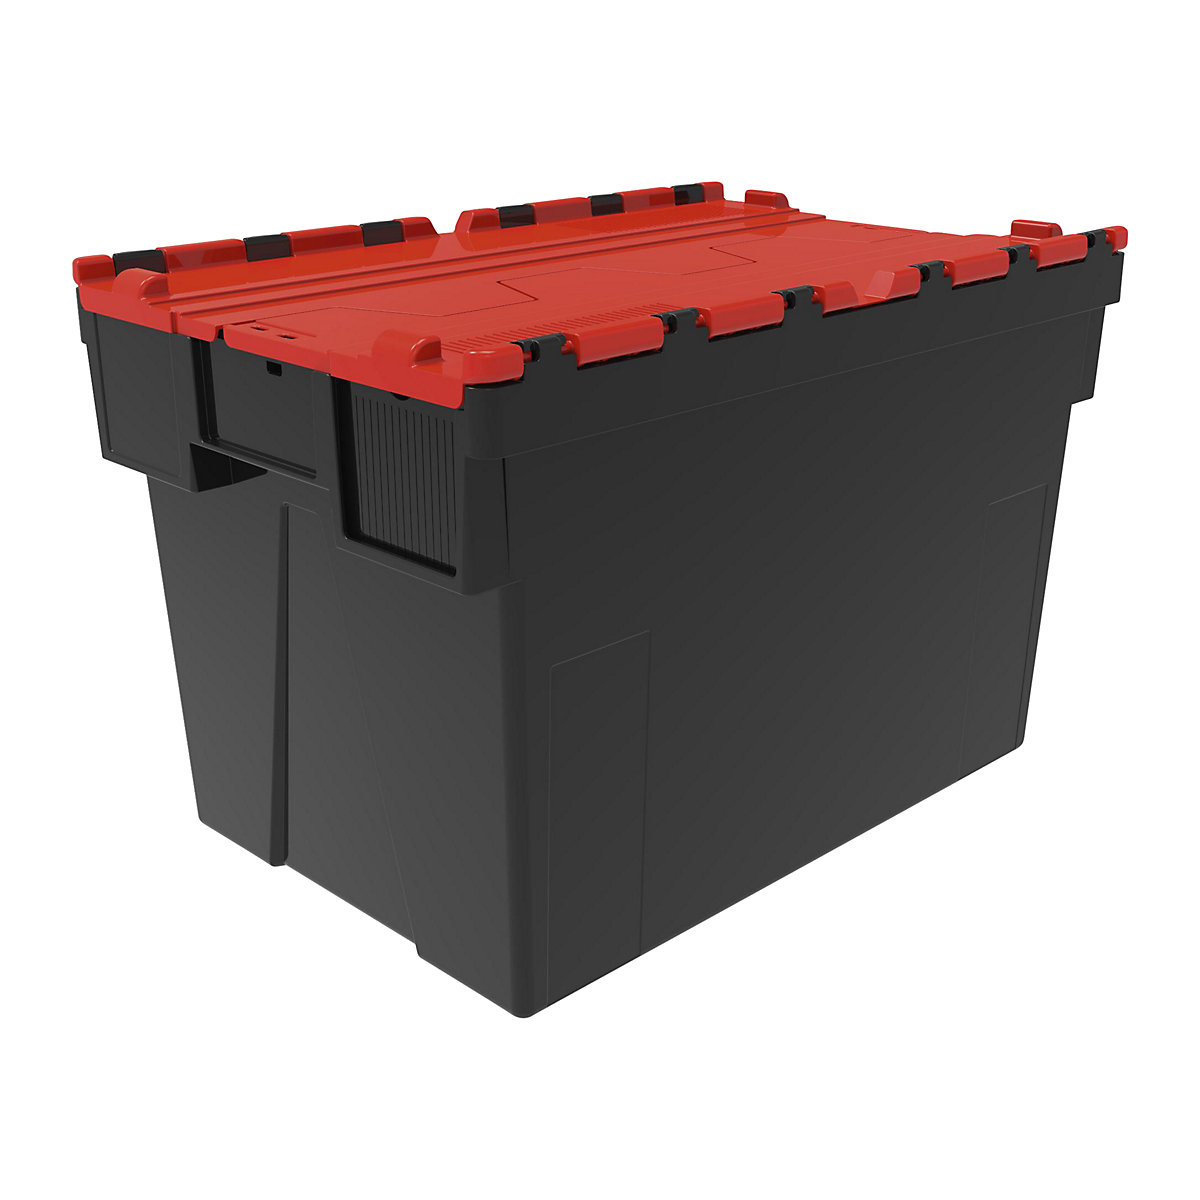 Többször használható rakásolható tároló, h x szé x ma 600 x 400 x 400 mm, cs. e. 5 db, fekete színben, piros fedéllel